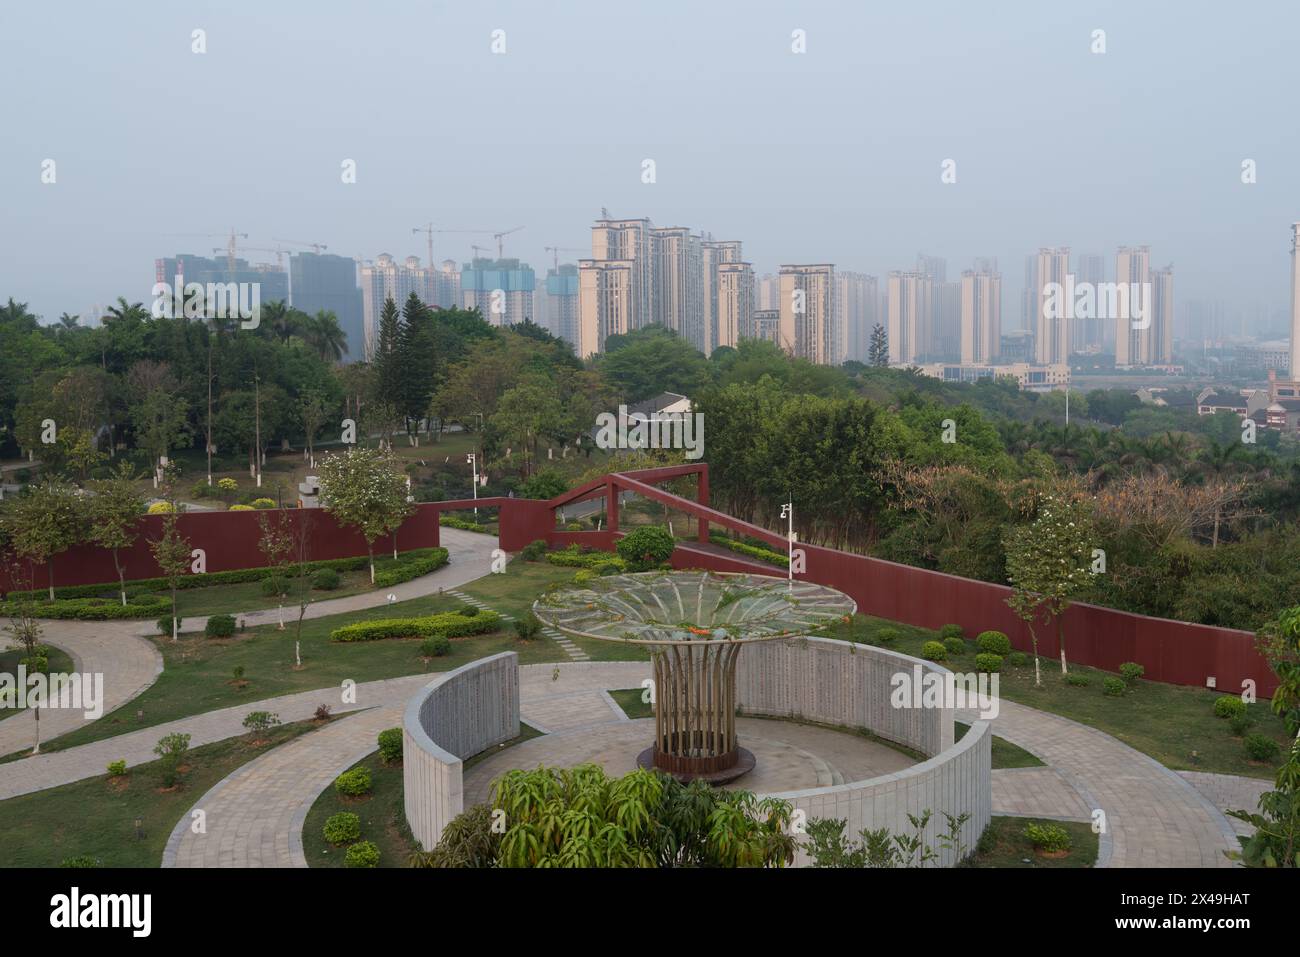 Baise City, Guangxi, China - 30. März 2023: Eine Szene auf der Baise Garden Expo. In der Ferne befindet sich ein Hochhaus-Wohnkomplex Stockfoto